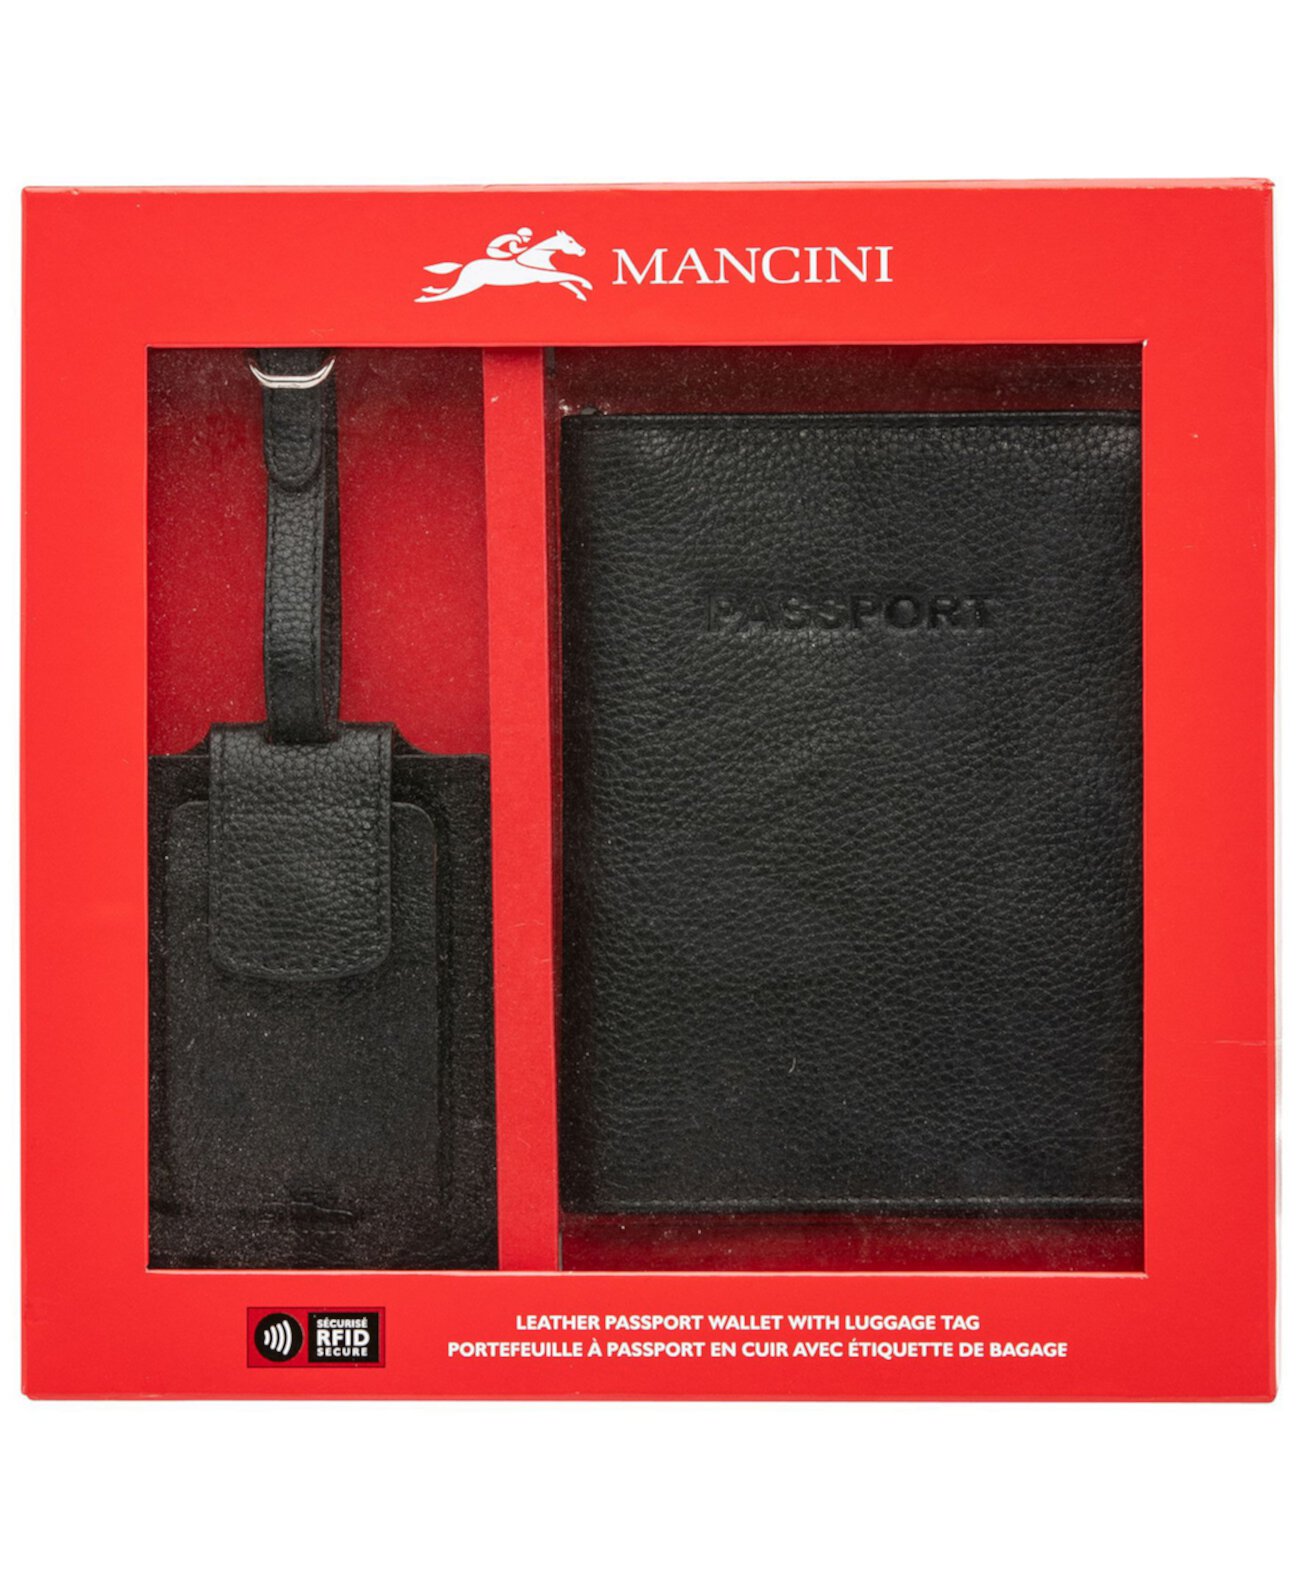 Box Set Collection Мужская защищенная RFID-метка для паспорта с багажной биркой Mancini